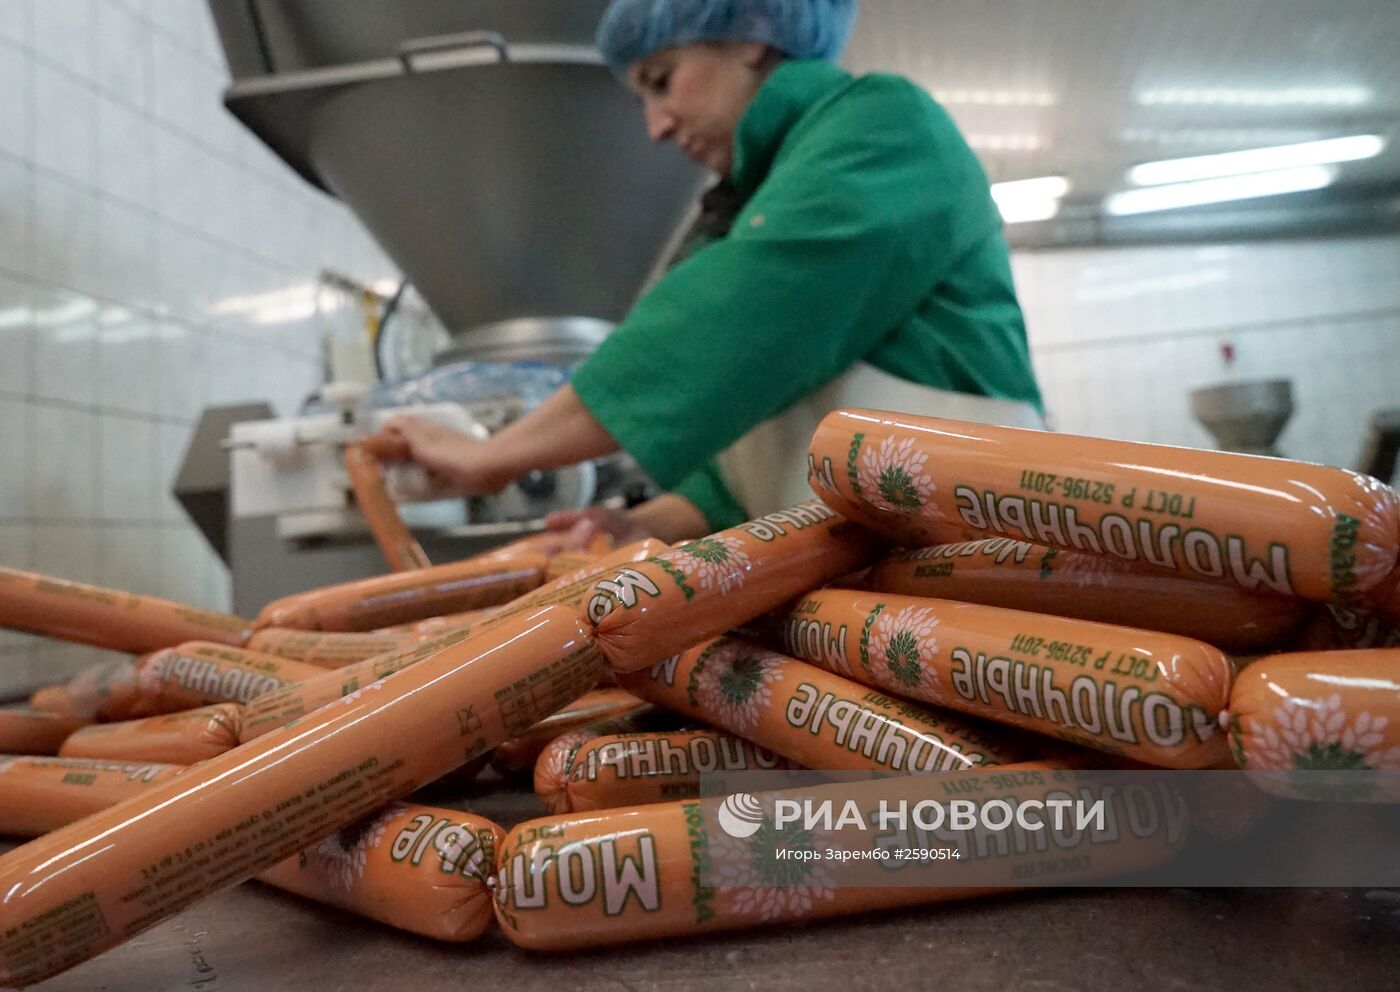 Колбасный завод "Коляда" в Калининградской области